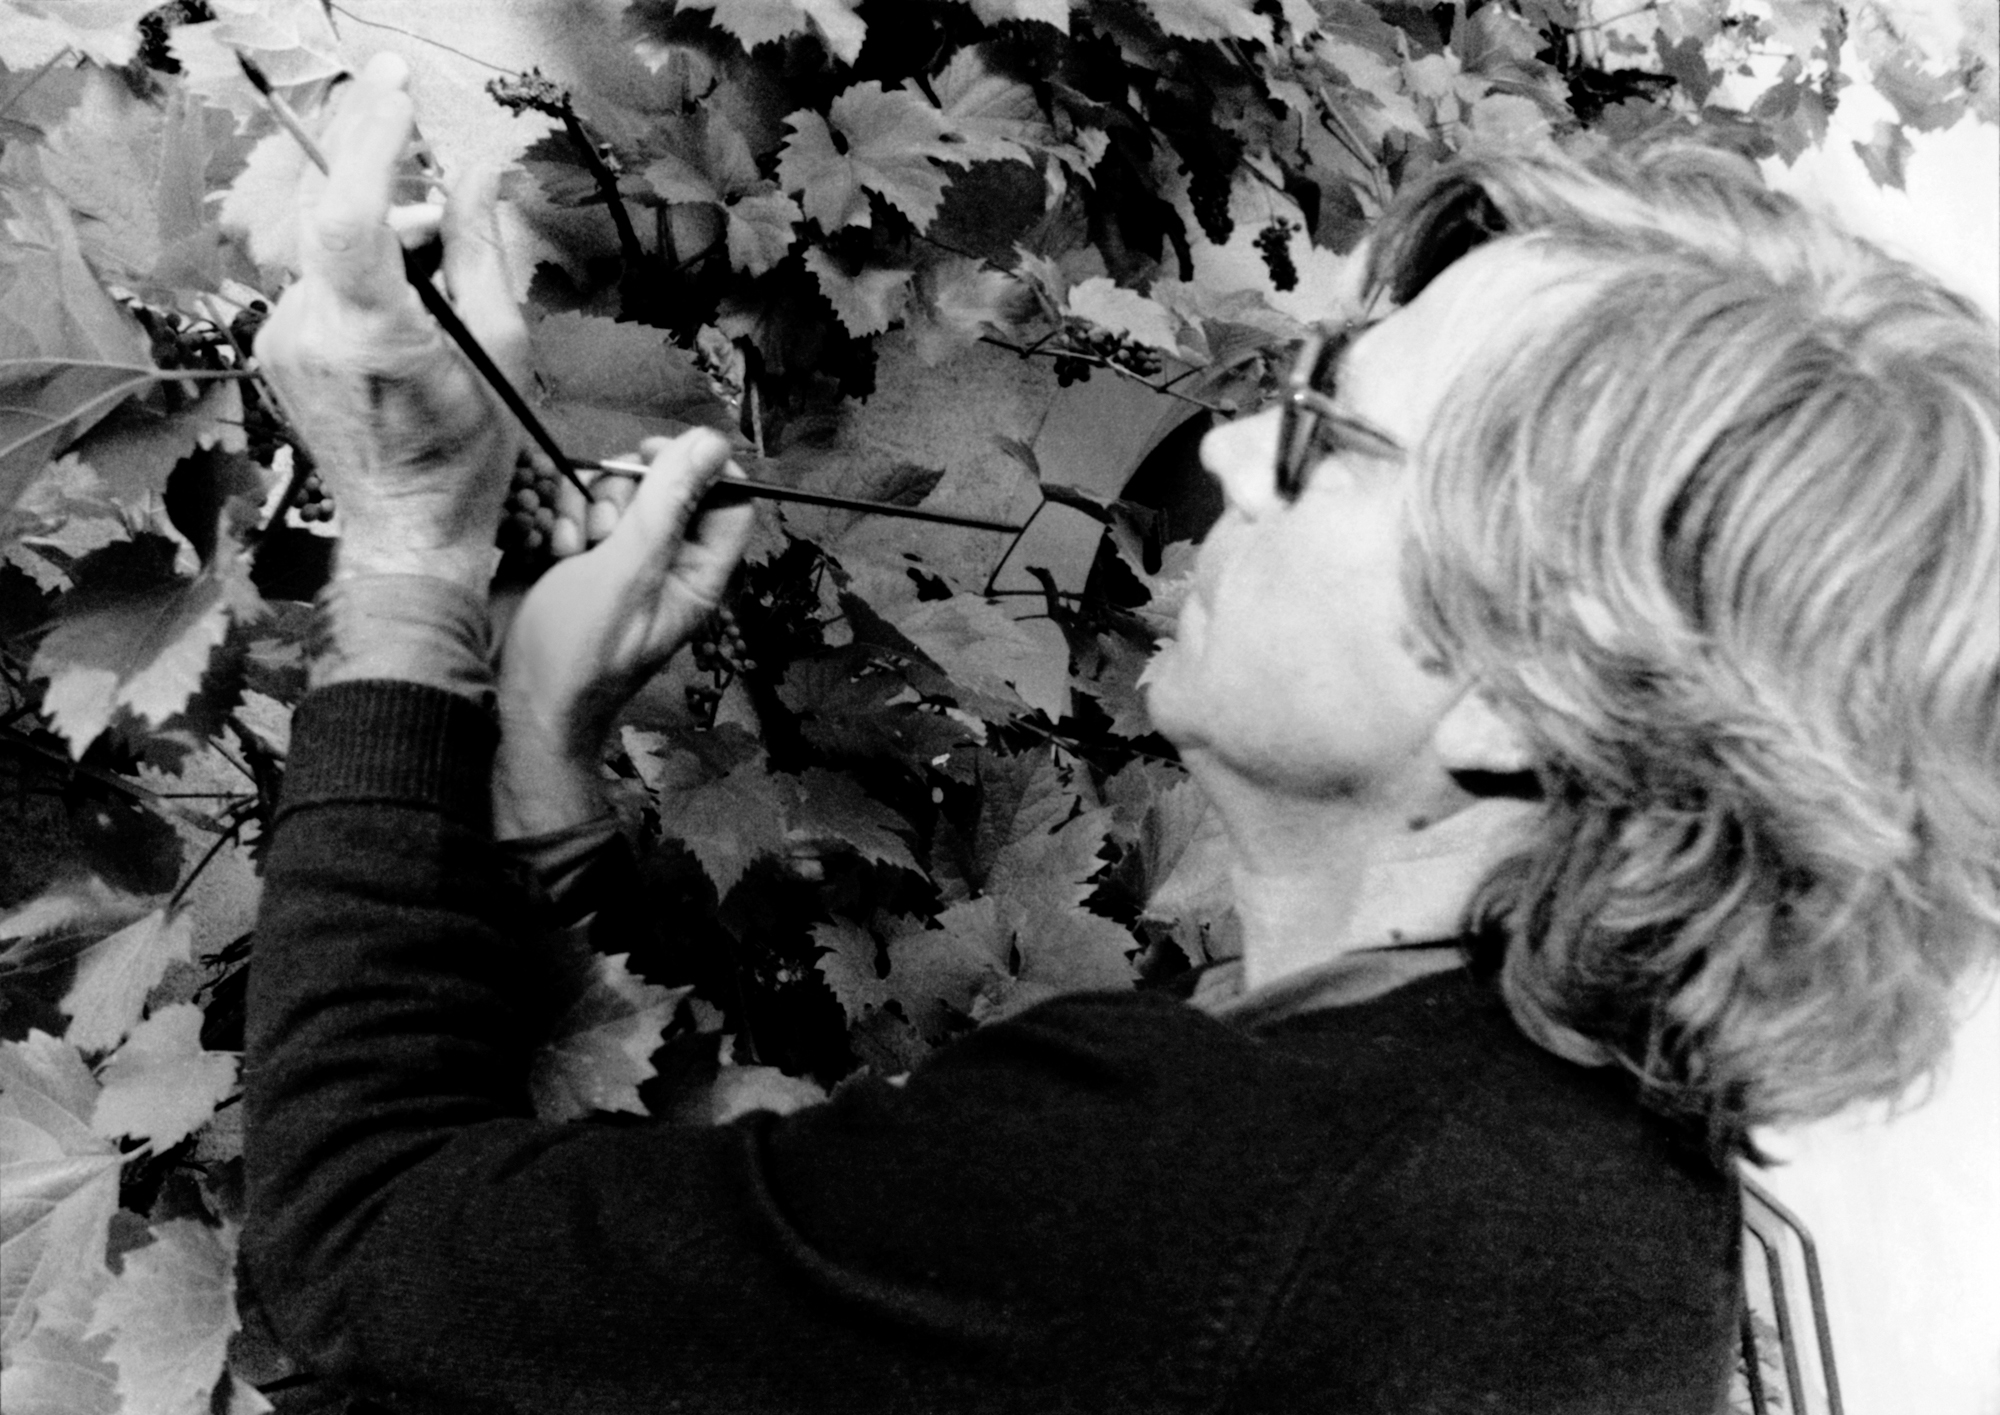 Bazon malt als Apelles Fliegen auf Trauben – Zeuxis und Parrhasios bewundern ihn., Bild: Baselland 1981. Foto | Annemarie Burckhardt.